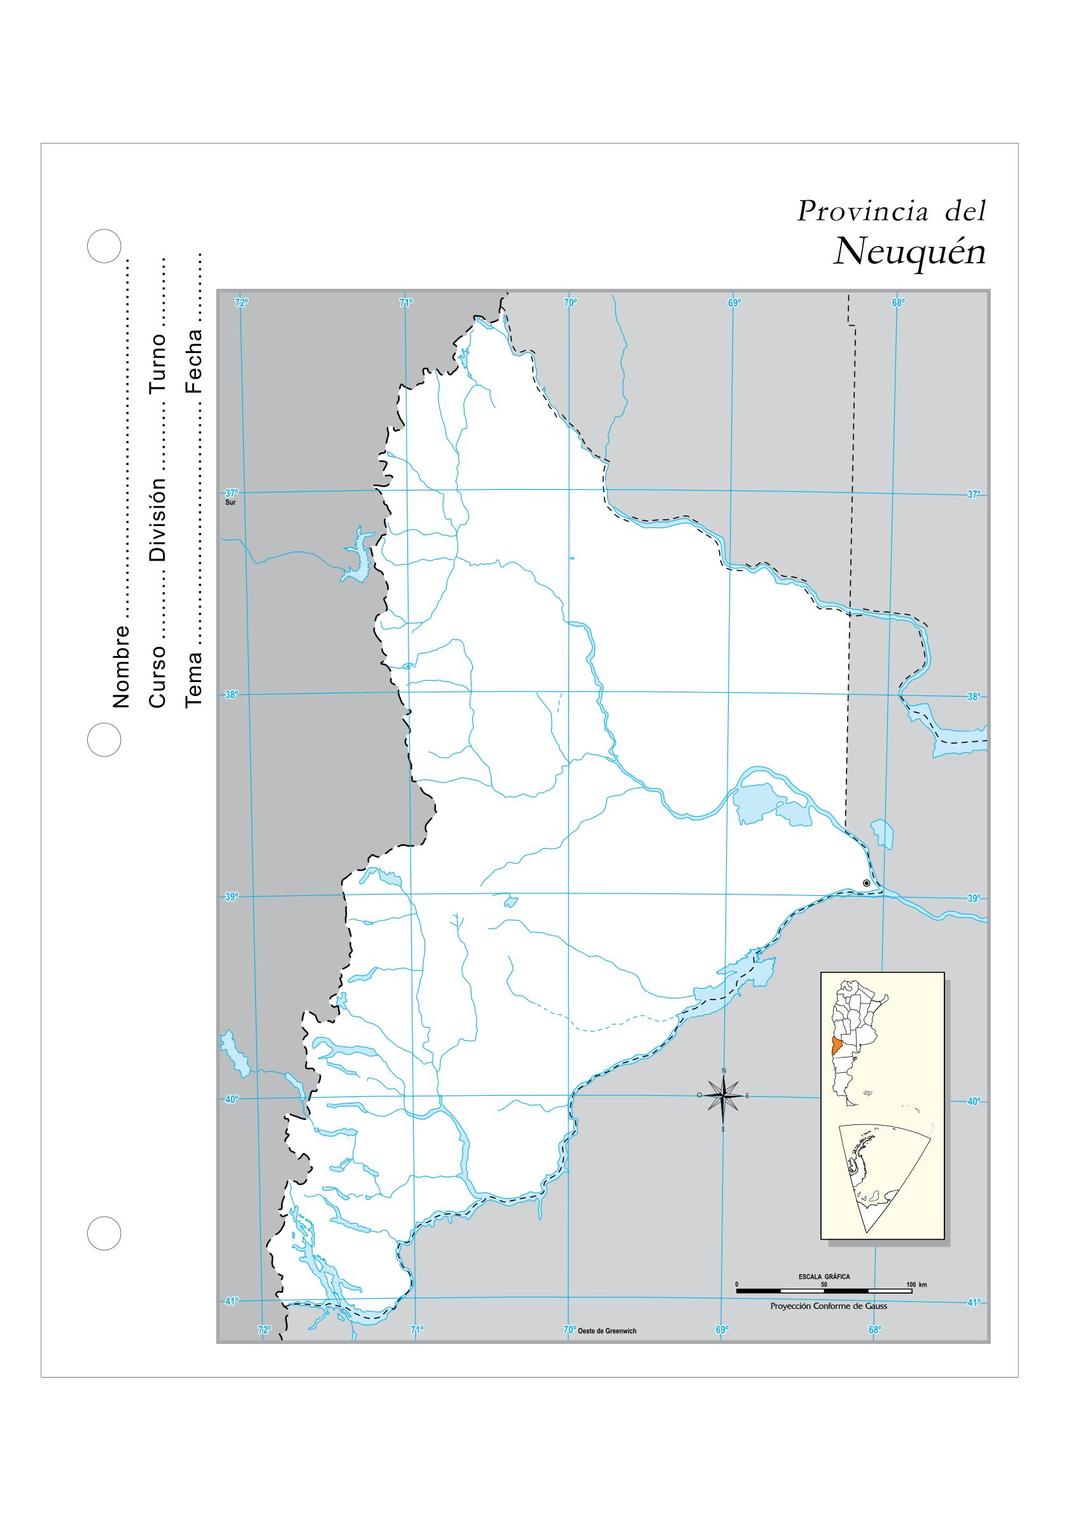 Provincia del Neuquen png transparent